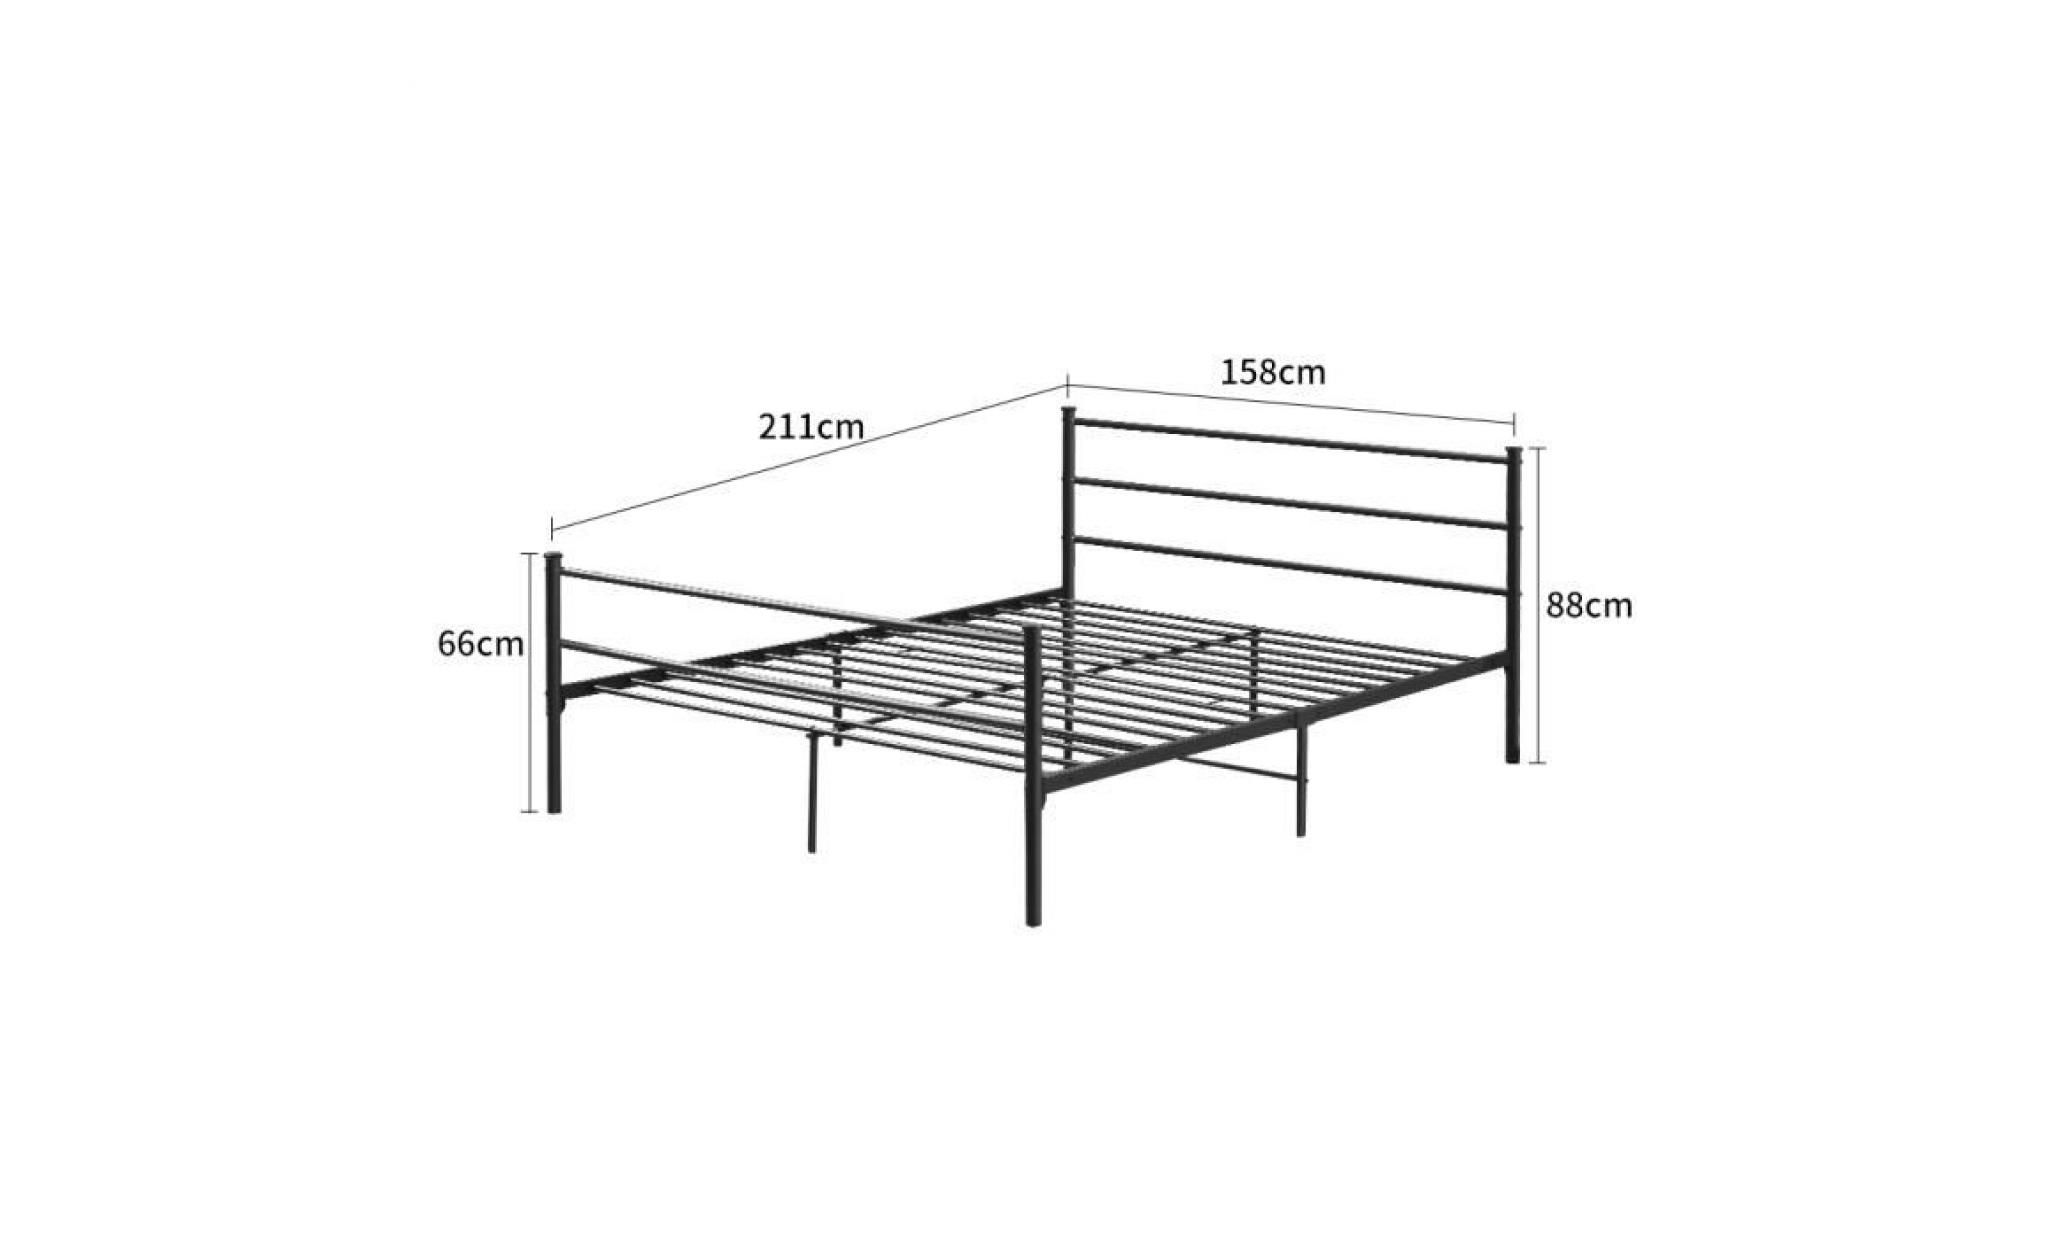 lit double 158cm x 211cm cadre de lit en métal pour les adultes et les enfants noir pas cher